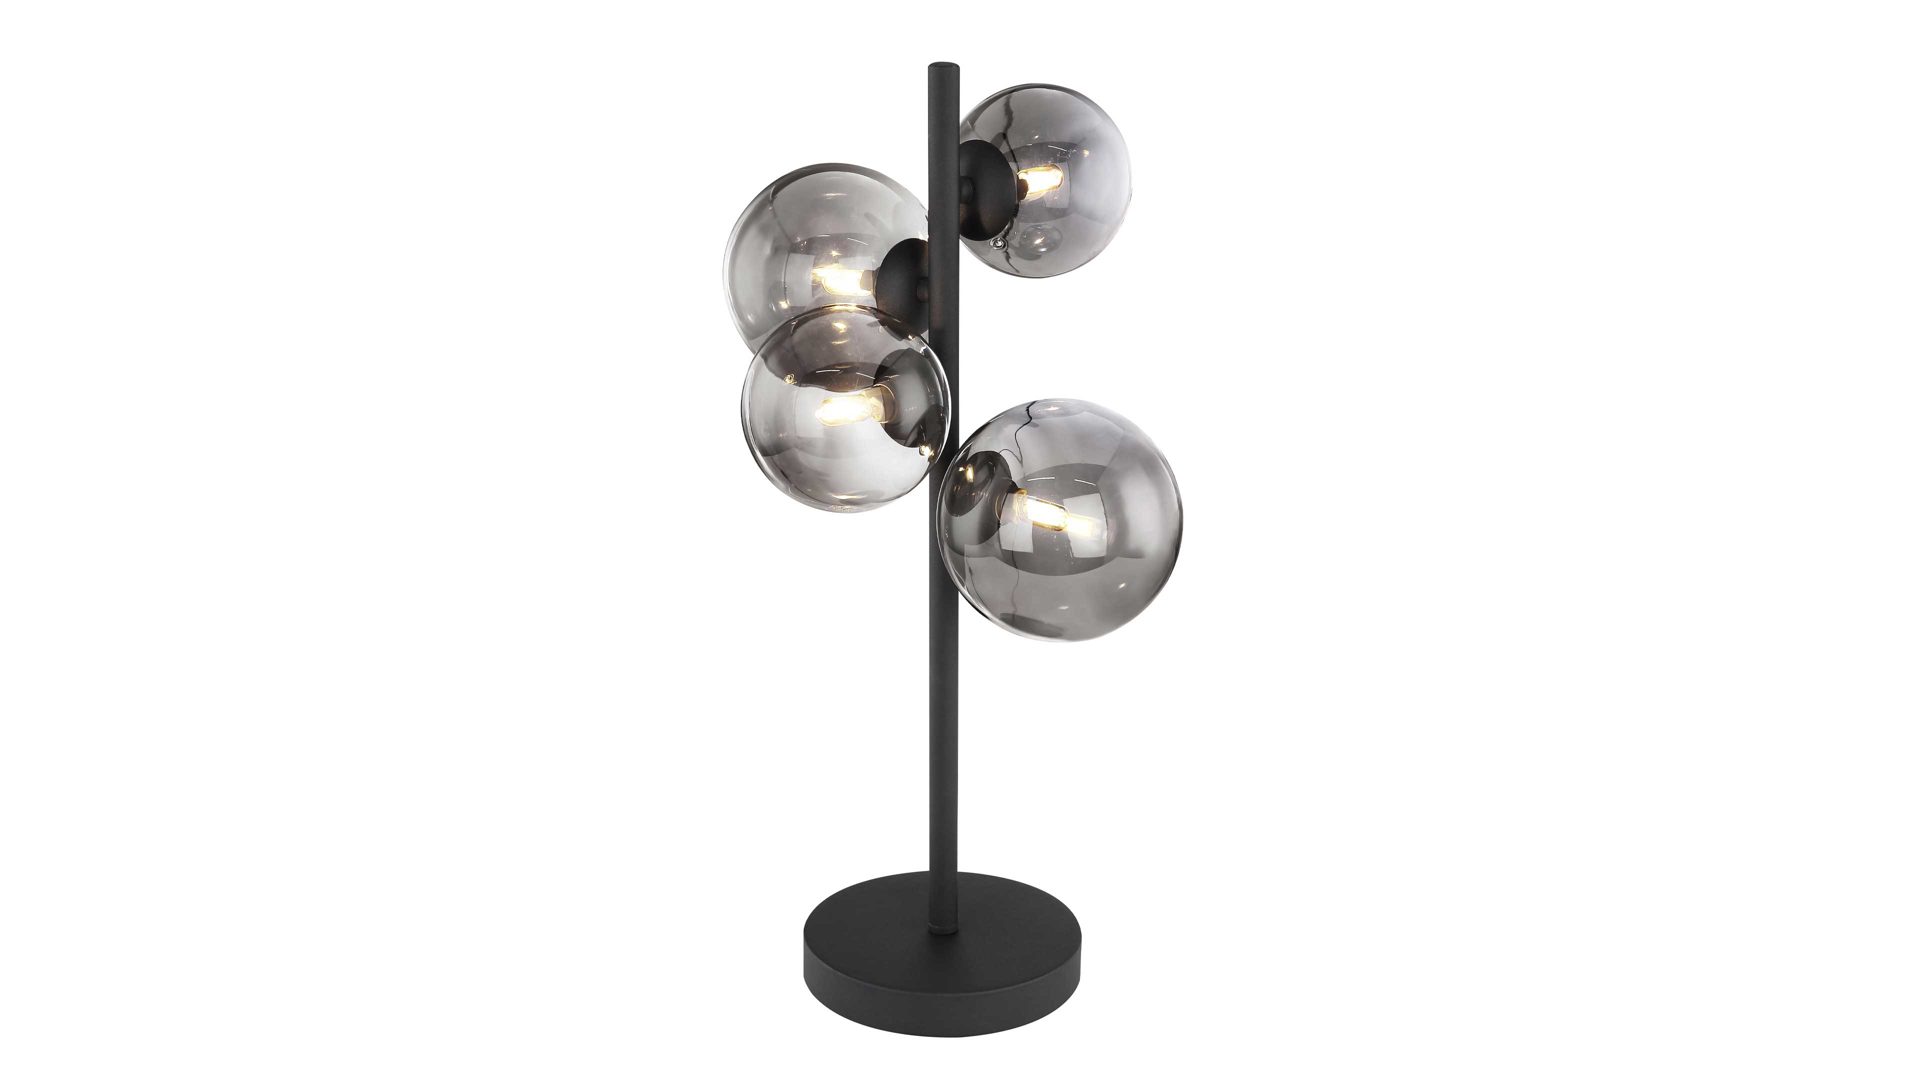 Tischleuchte Globo lighting aus Glas in Schwarz GLOBO Lampe-Serie Riha - Tischleuchte Rauchglas & mattschwarzes Metall - Höhe ca. 48 cm